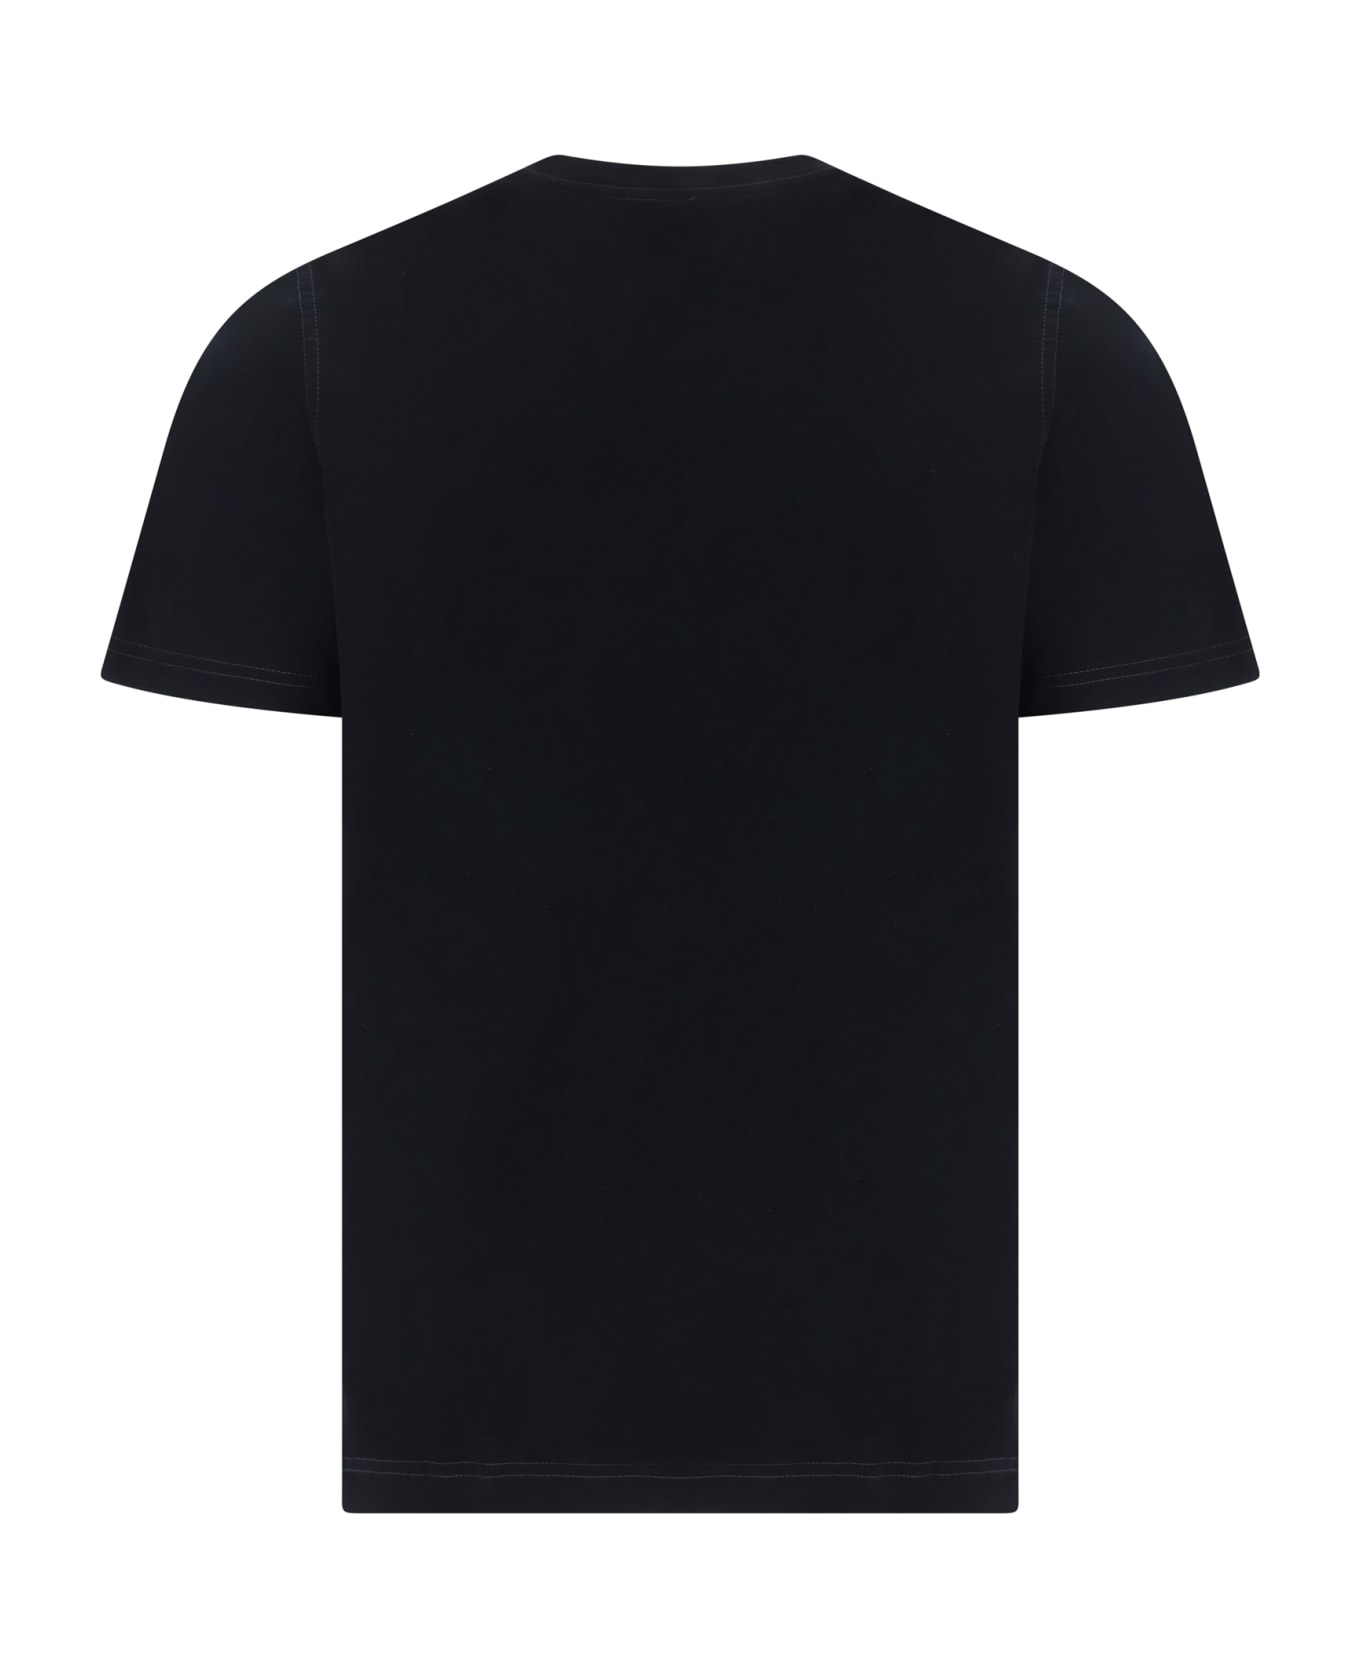 Diesel T-shirt - BLACK